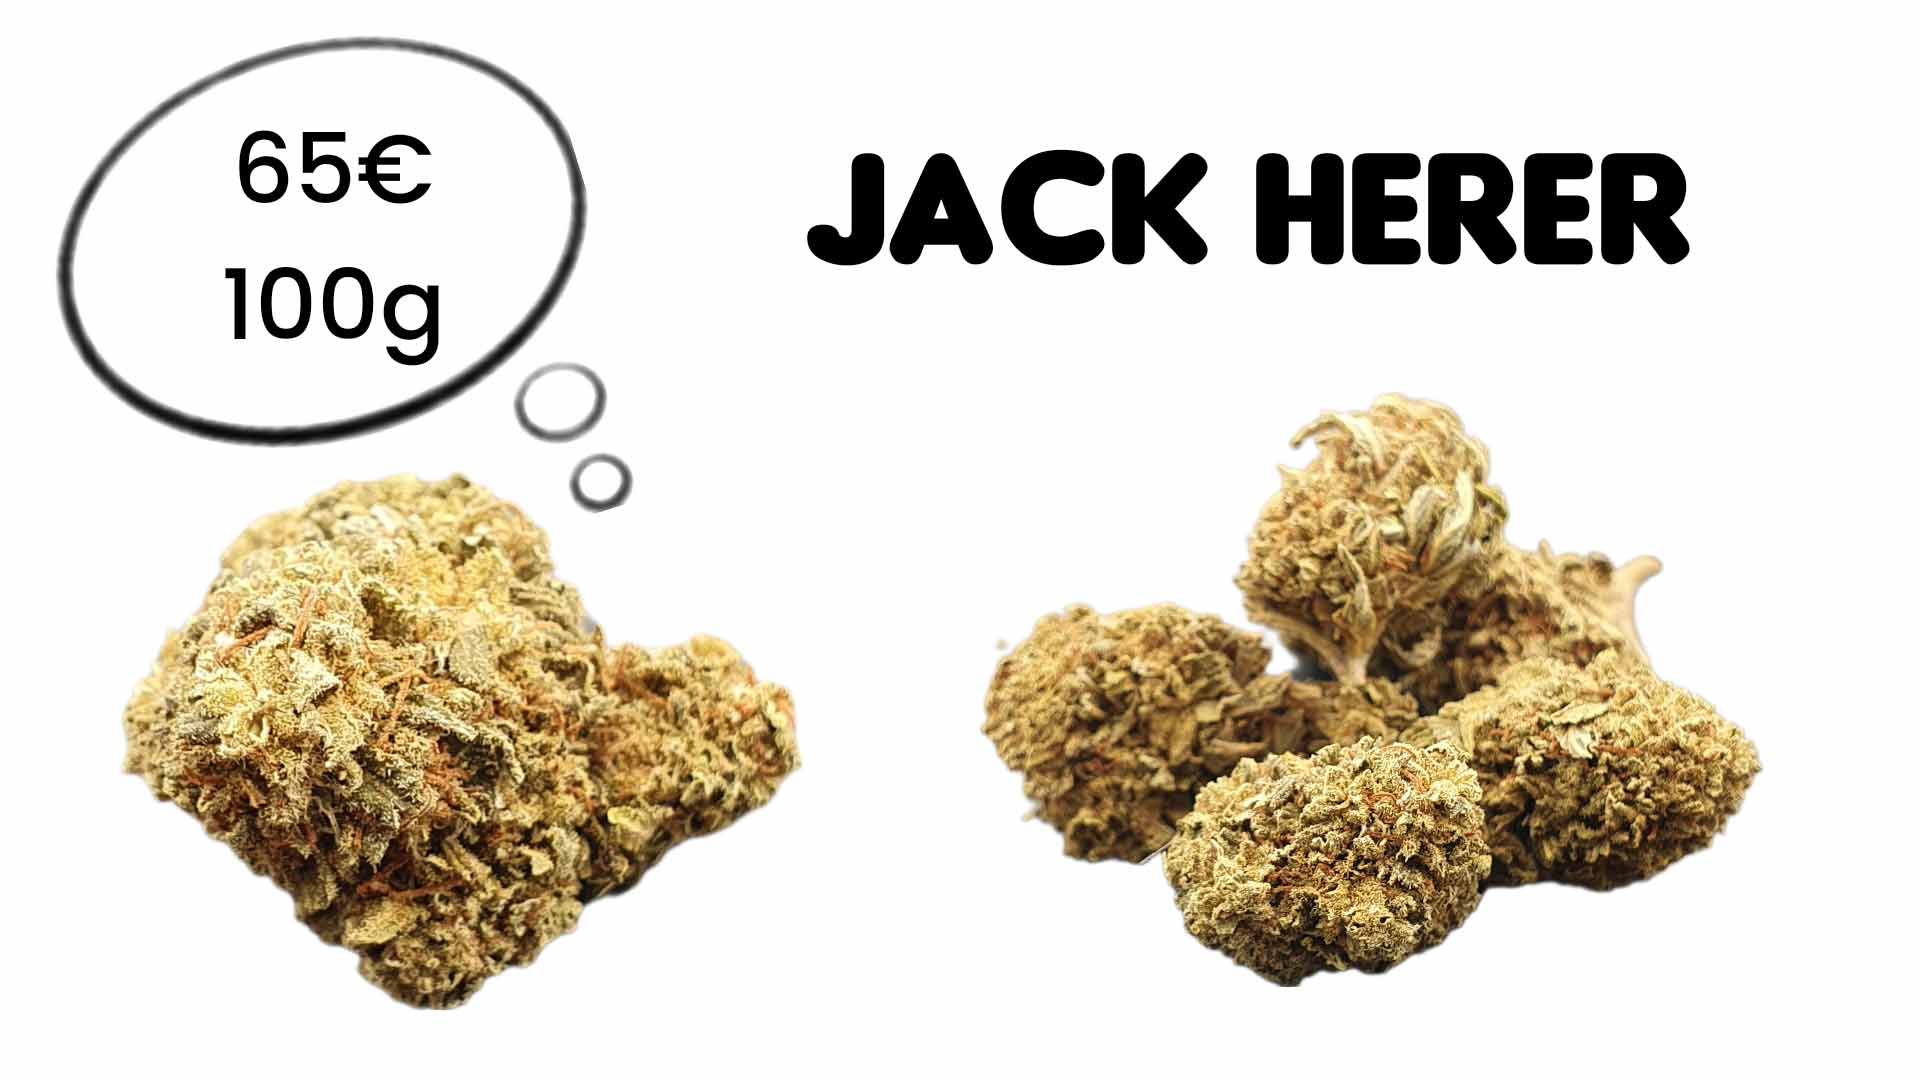 La jack herer est une fleur CBD pas chère 65€ les 100g chez GreenForestCbd®. Dans cet article, nous vous parlons de son bienfait médical.